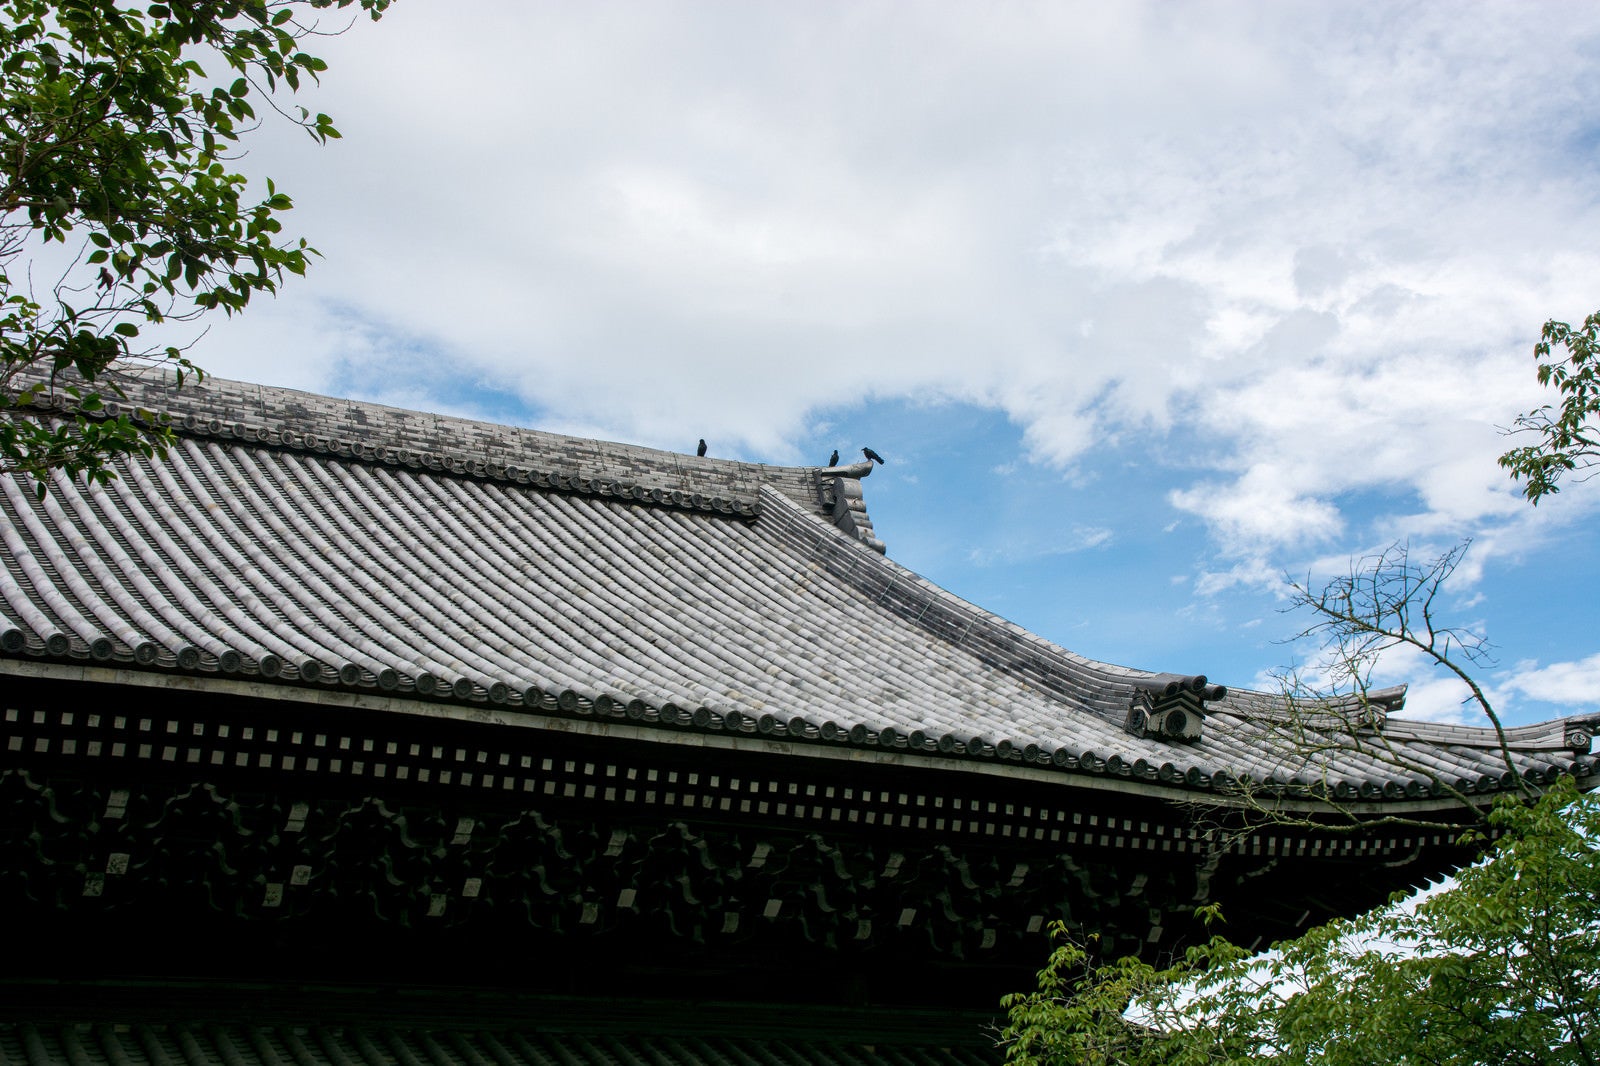 「南禅寺法堂の屋根の上で休憩する烏」の写真